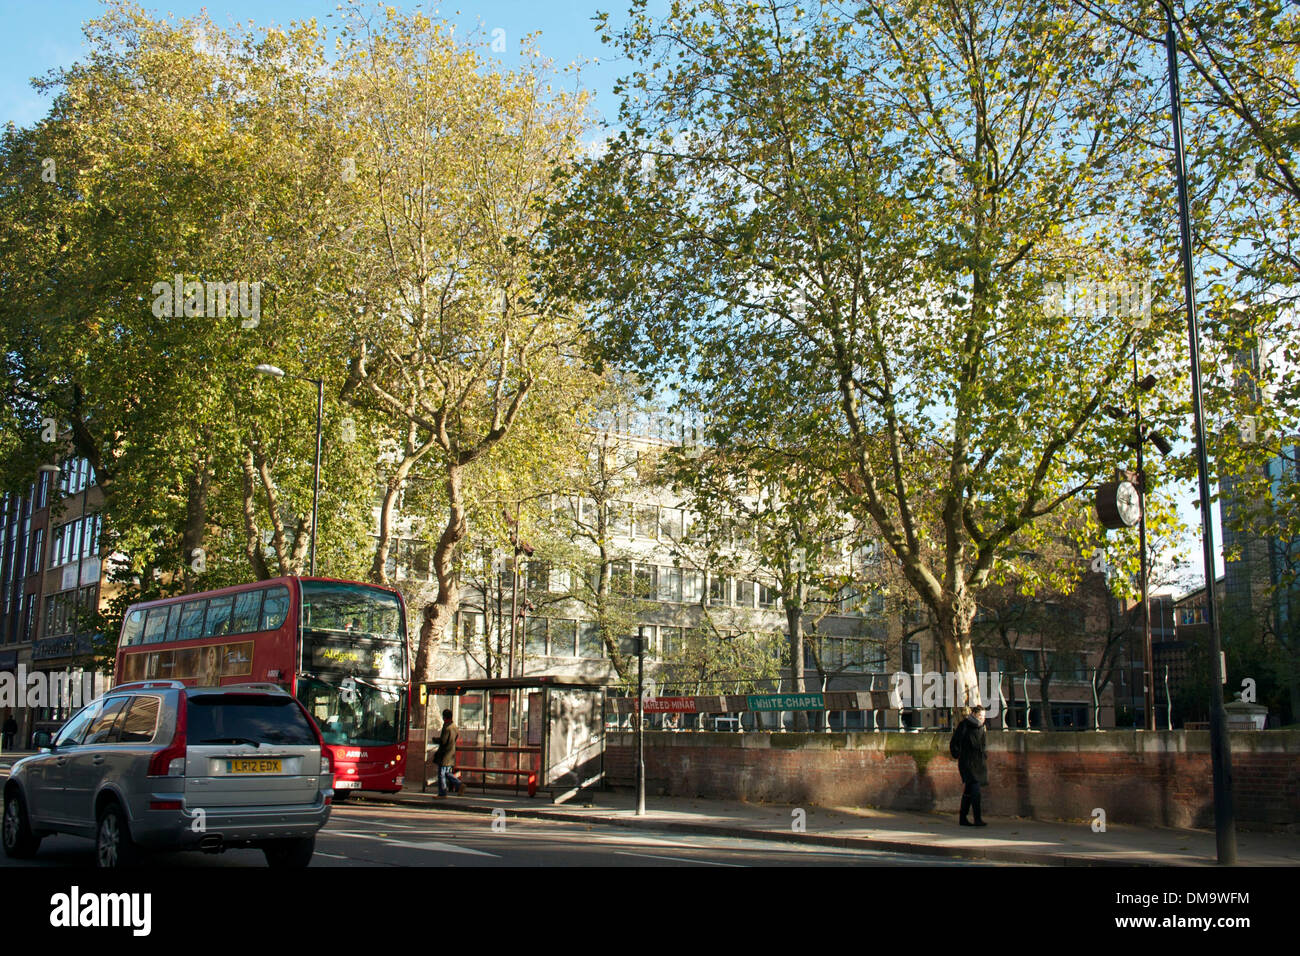 Trees at Altab Ali Park, Whitechapel, London UK Stock Photo